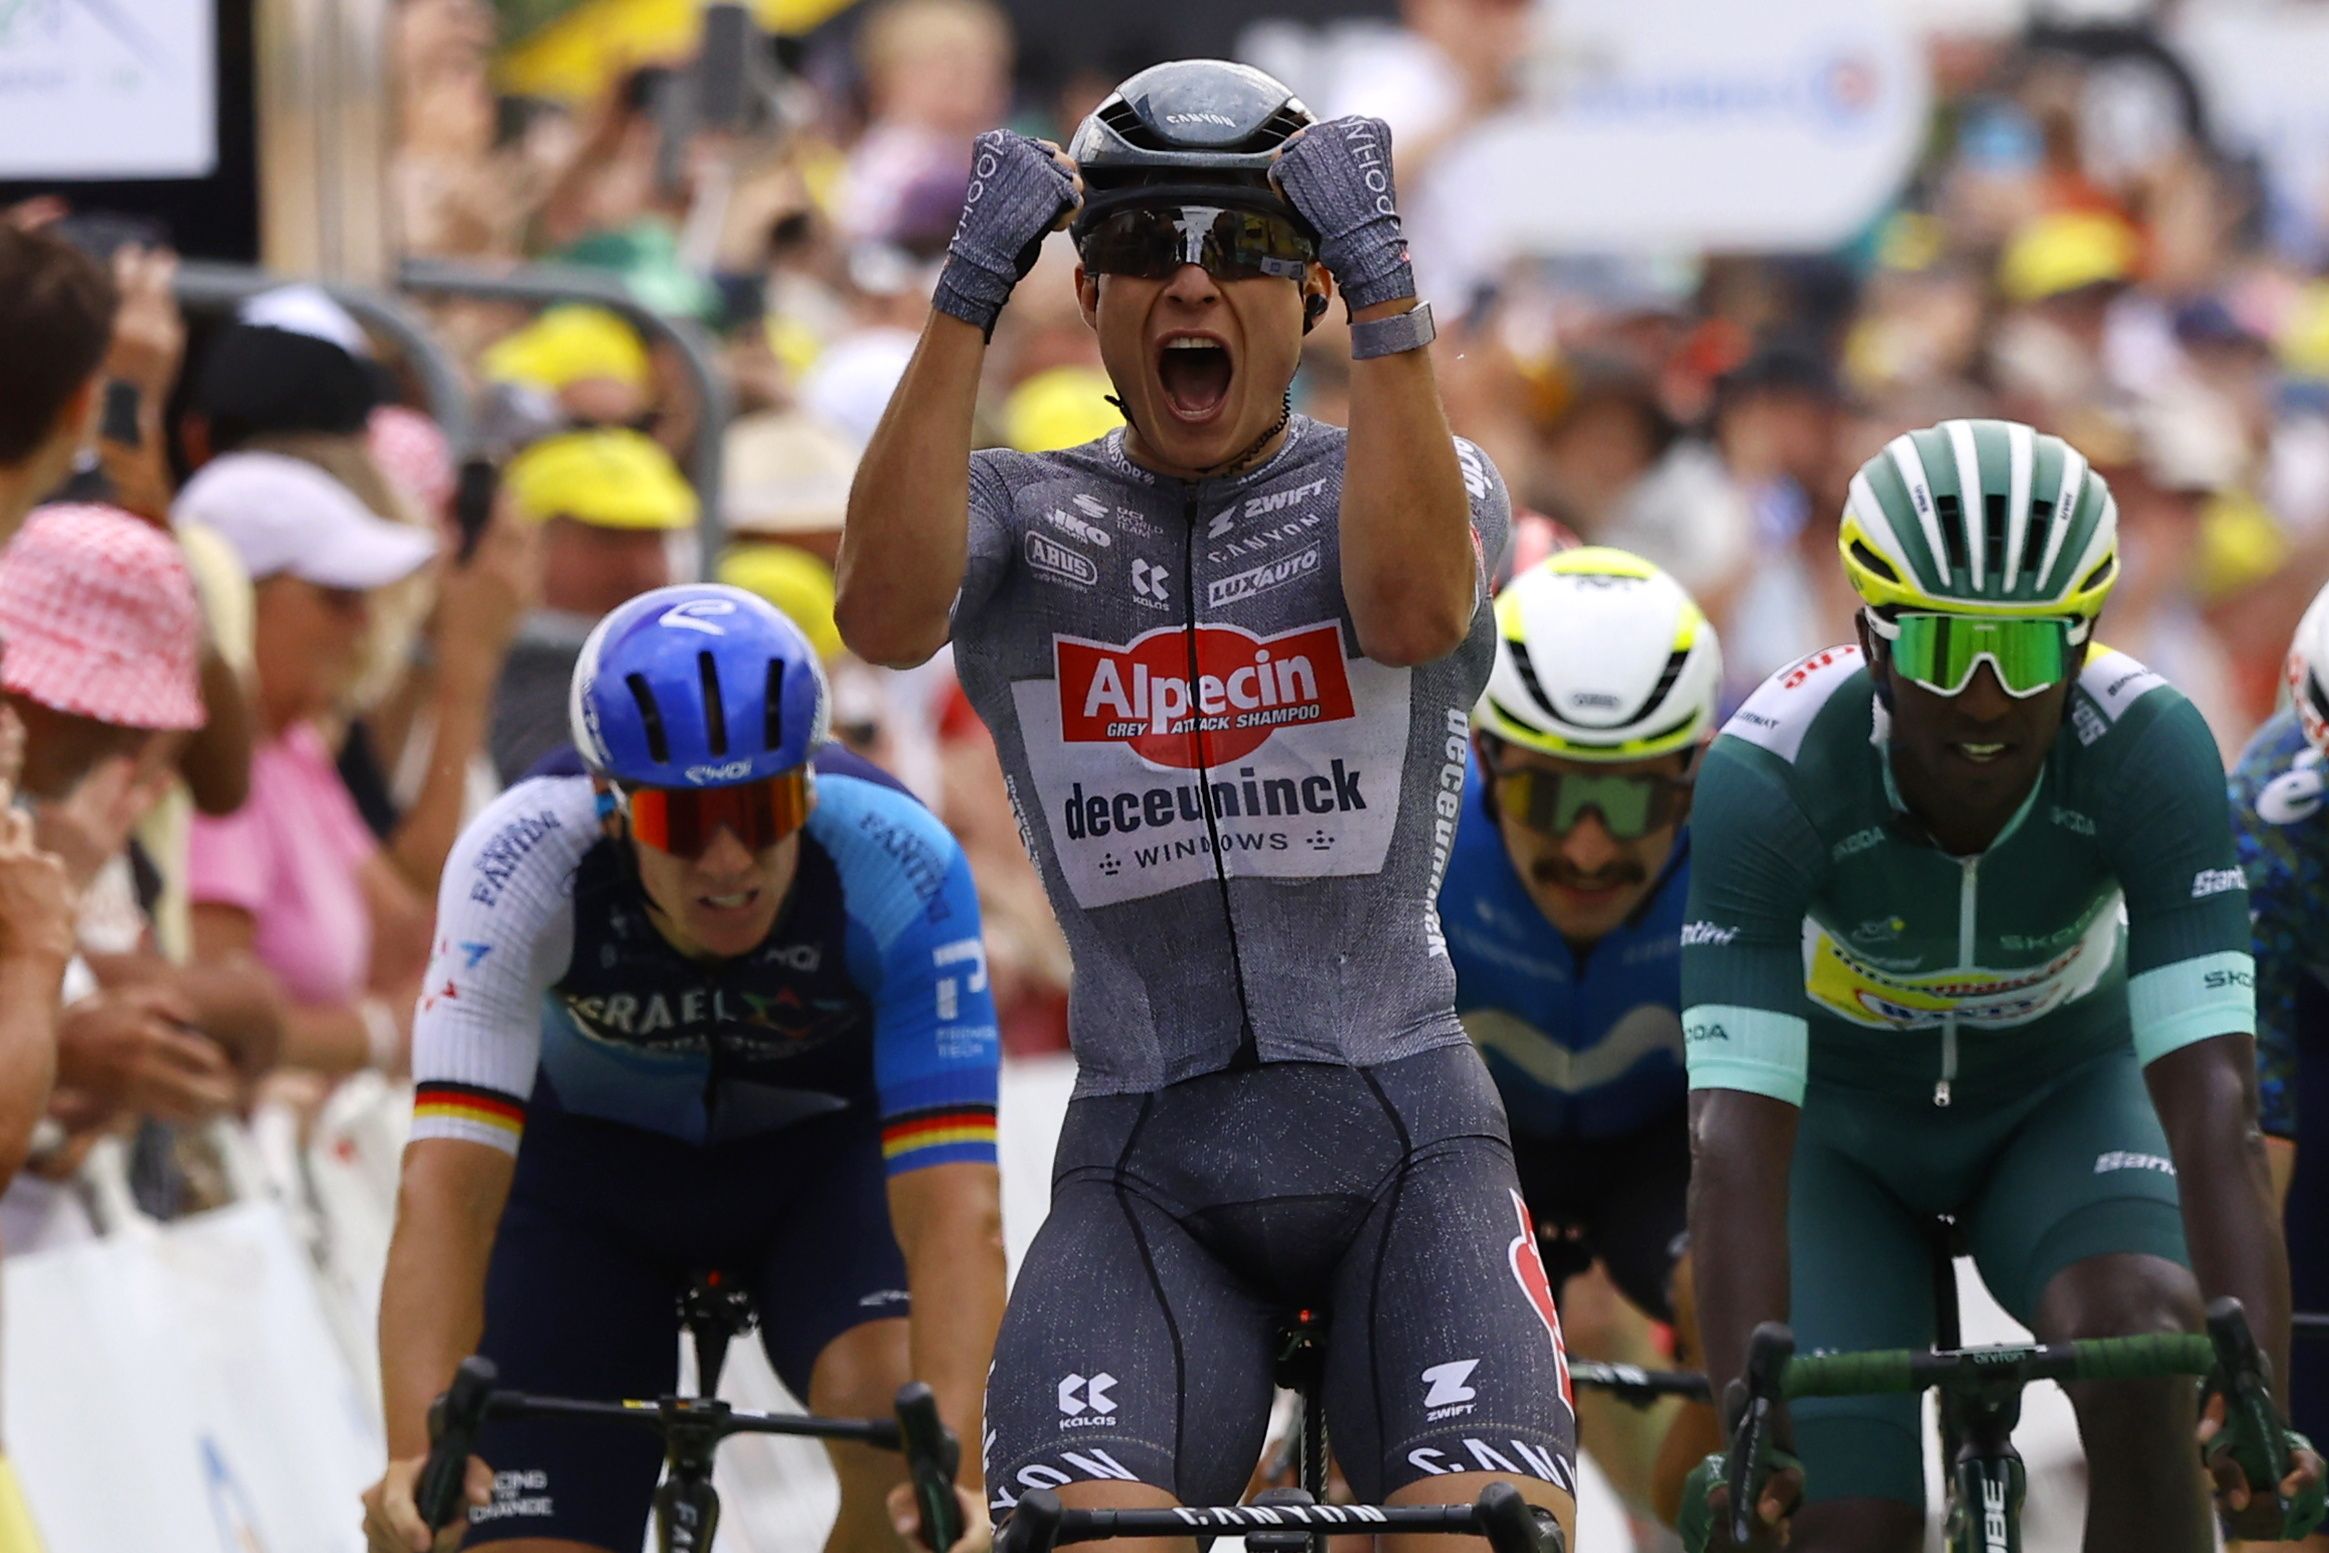 Jasper Philispen (Alpecin), Frantziako Tourreko hamargarren etapan lorturiko garaipena ospatzen. KIM LUDBROOK/EFE